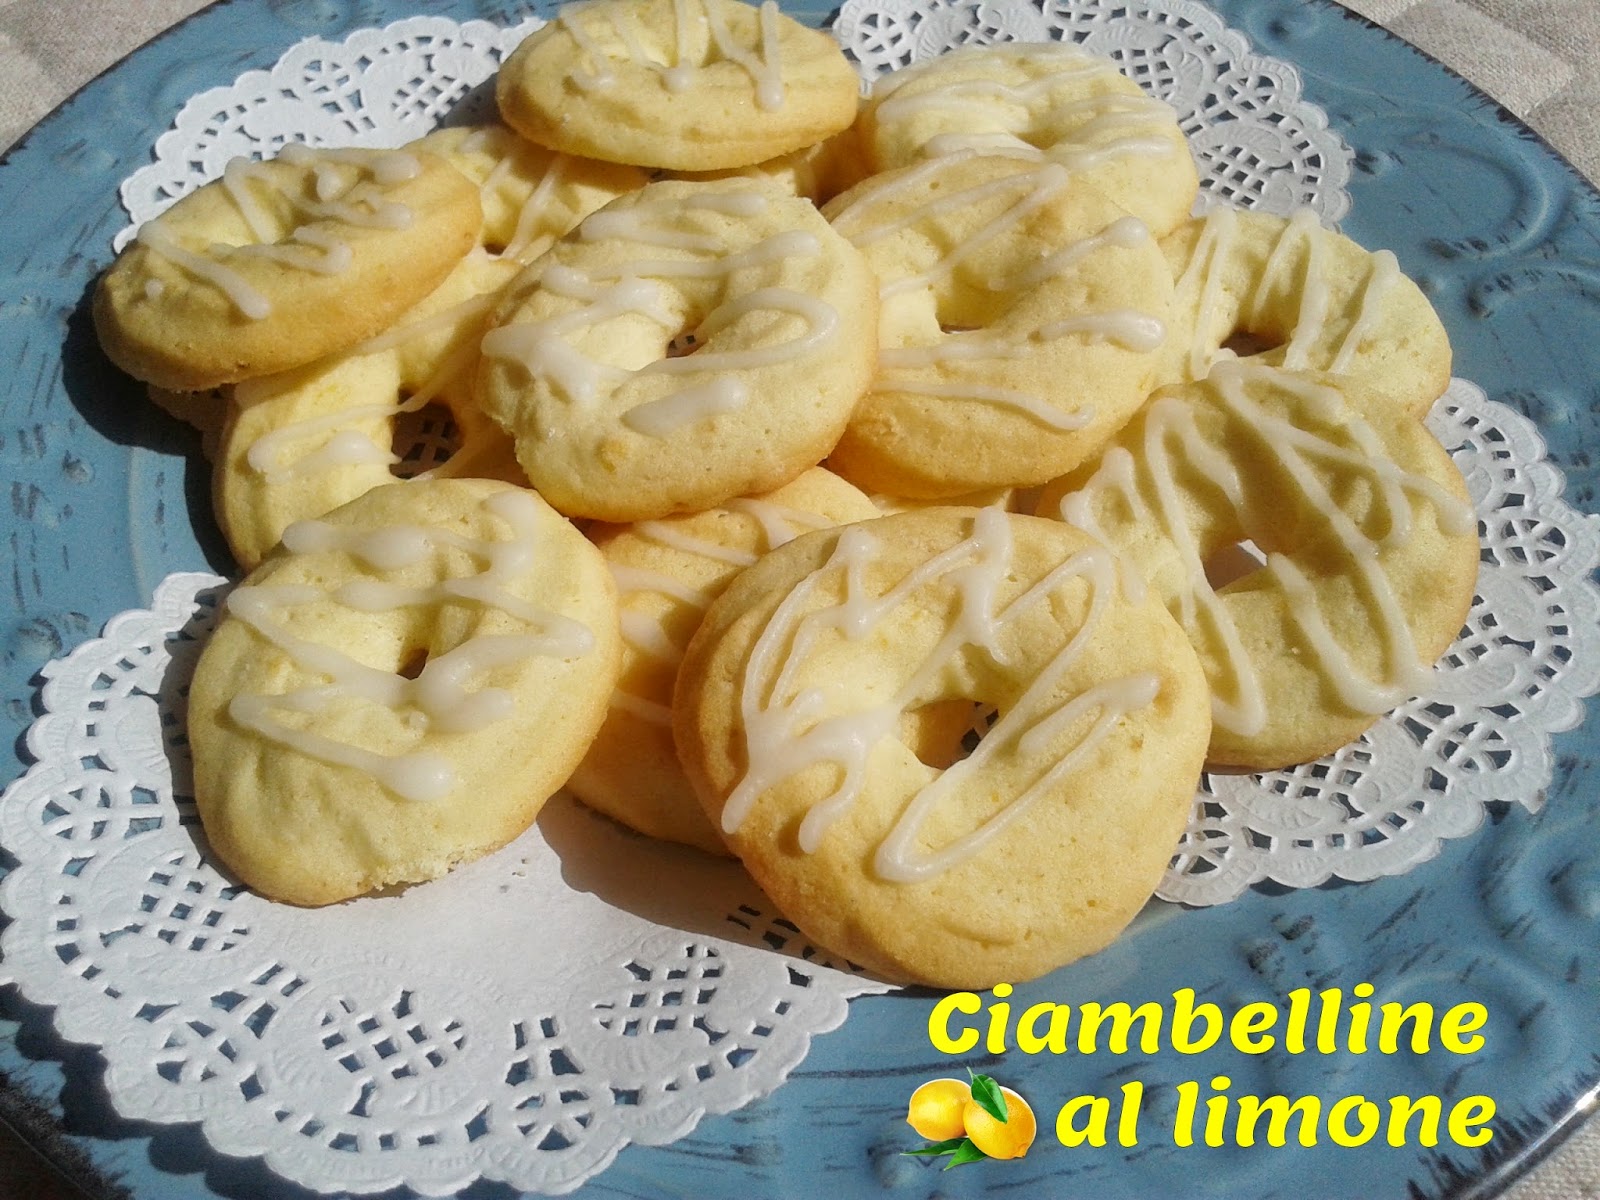 Ciambelline al limone